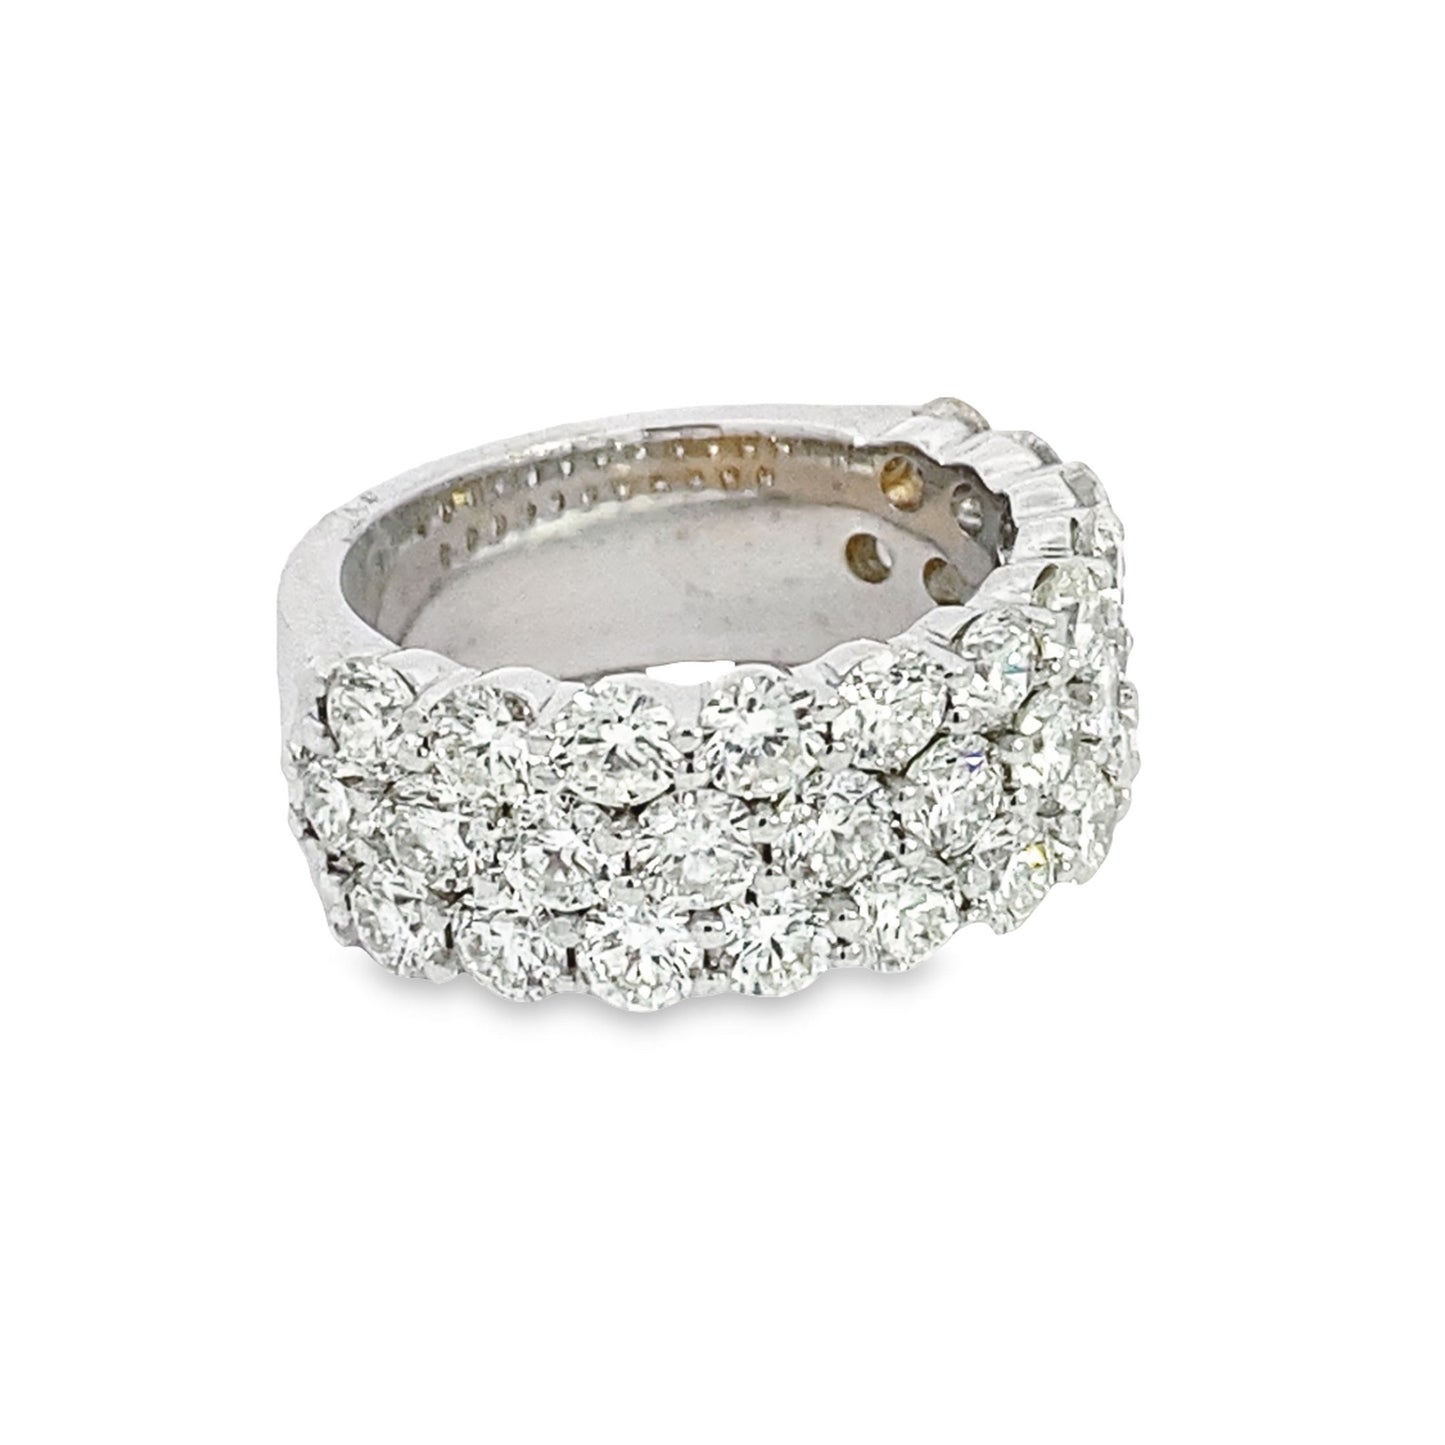 Viken Jewelry | 14K White Gold Diamond Ring